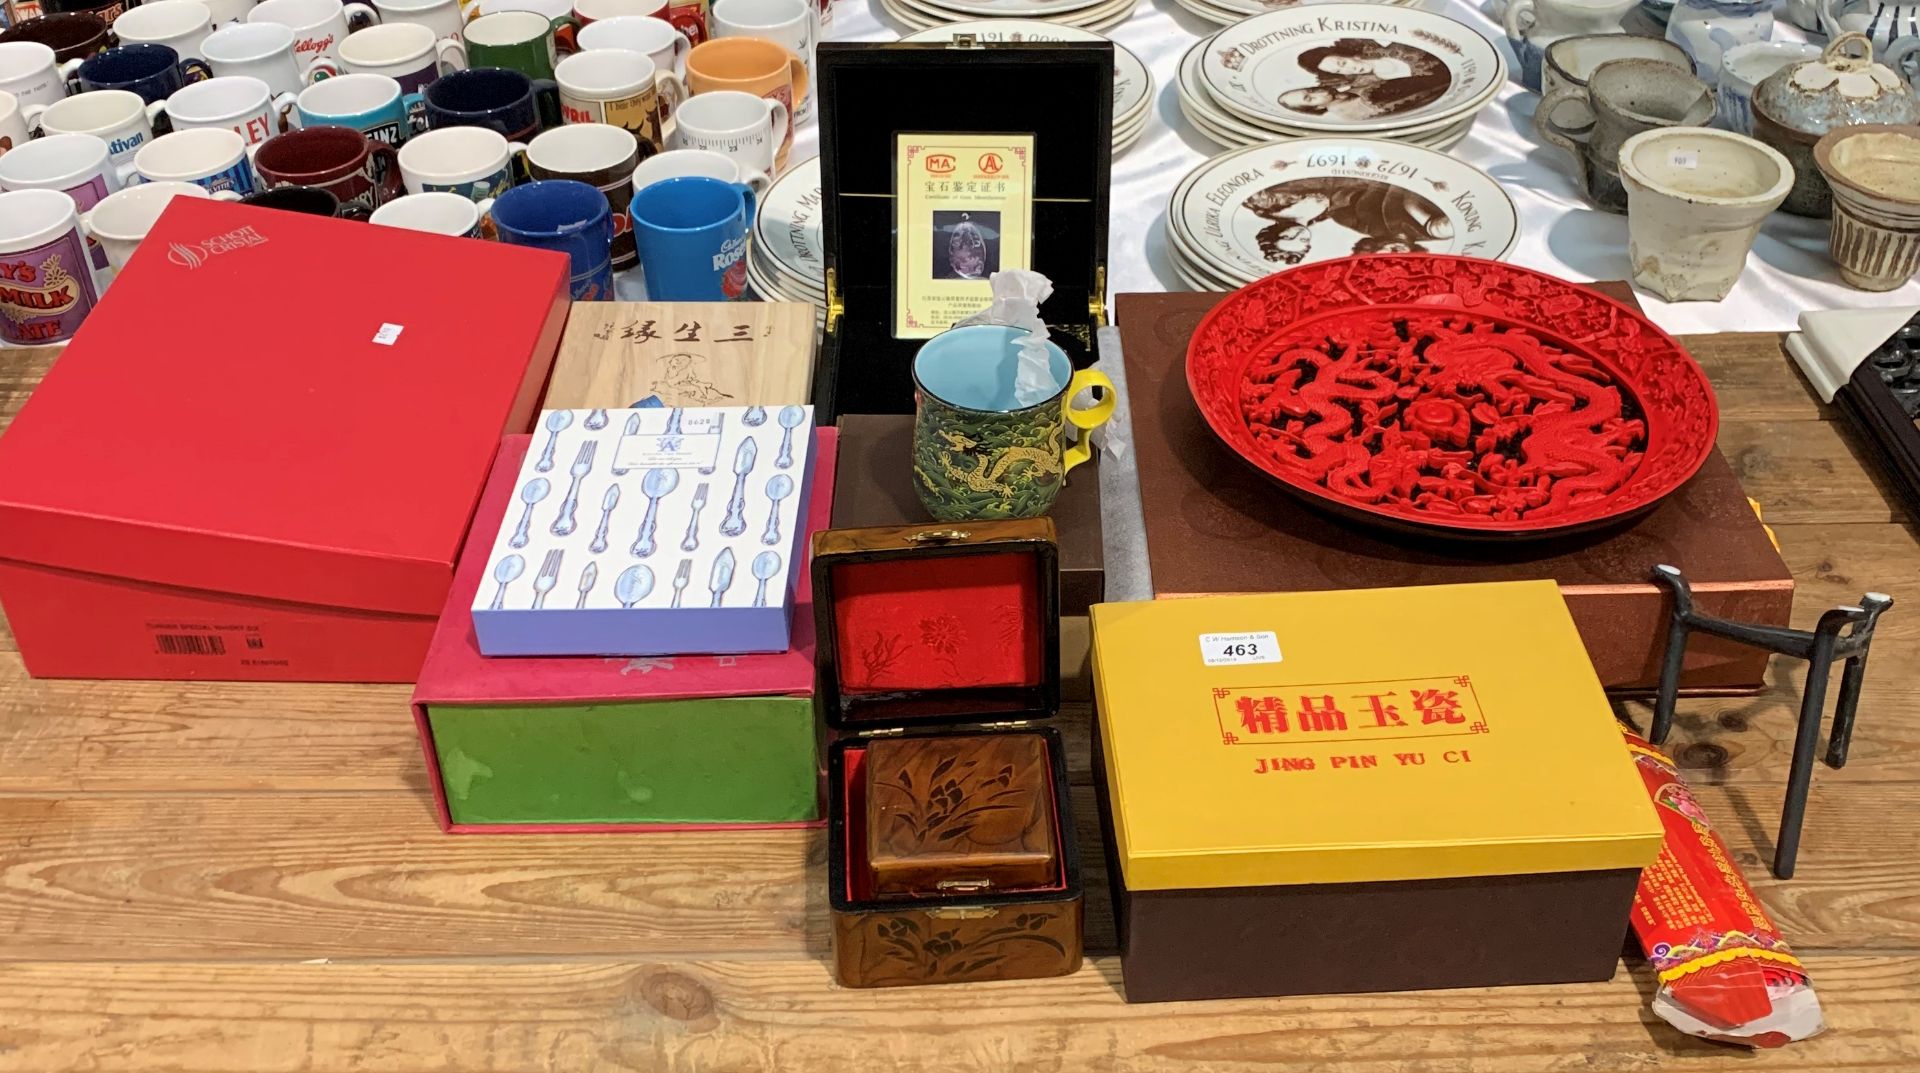 Ten various oriental items - including Jing Pin Yu C1 mugs, Lucky Dragon wall art,